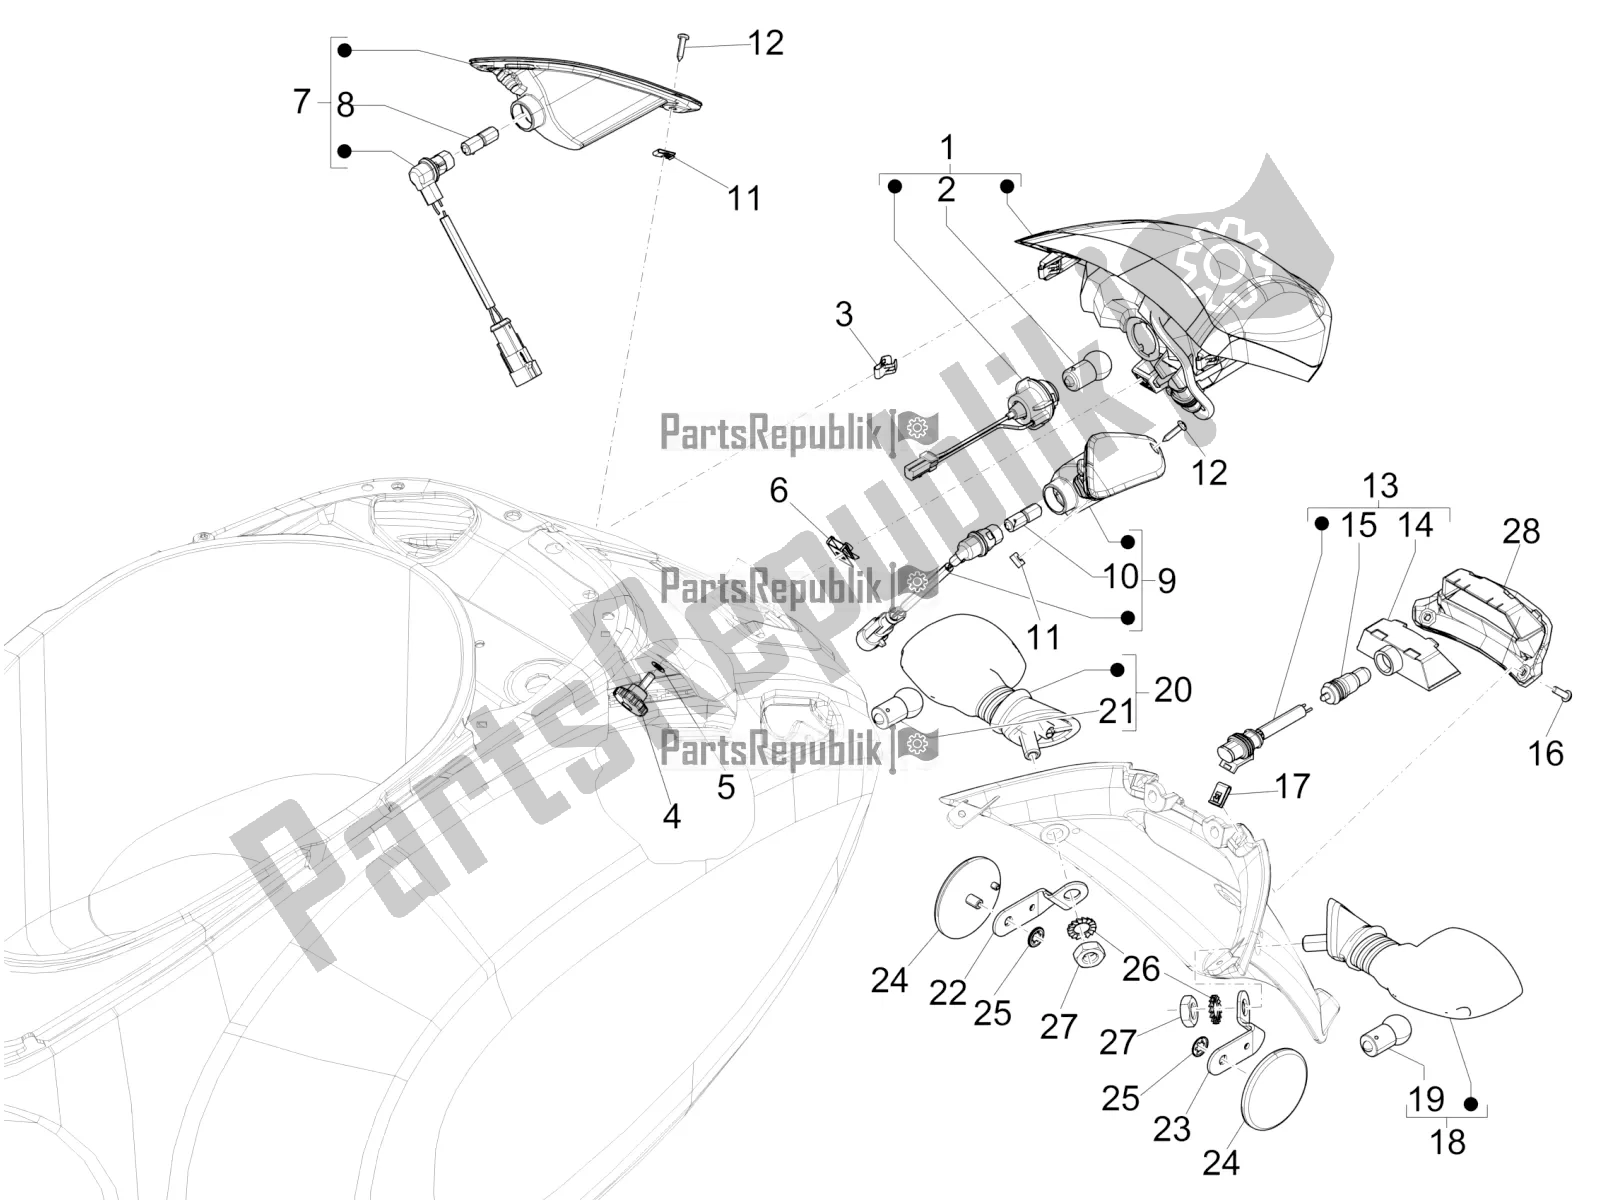 Alle onderdelen voor de Achterlichten - Richtingaanwijzers van de Vespa Elettrica Motociclo 70 KM/H USA 2021